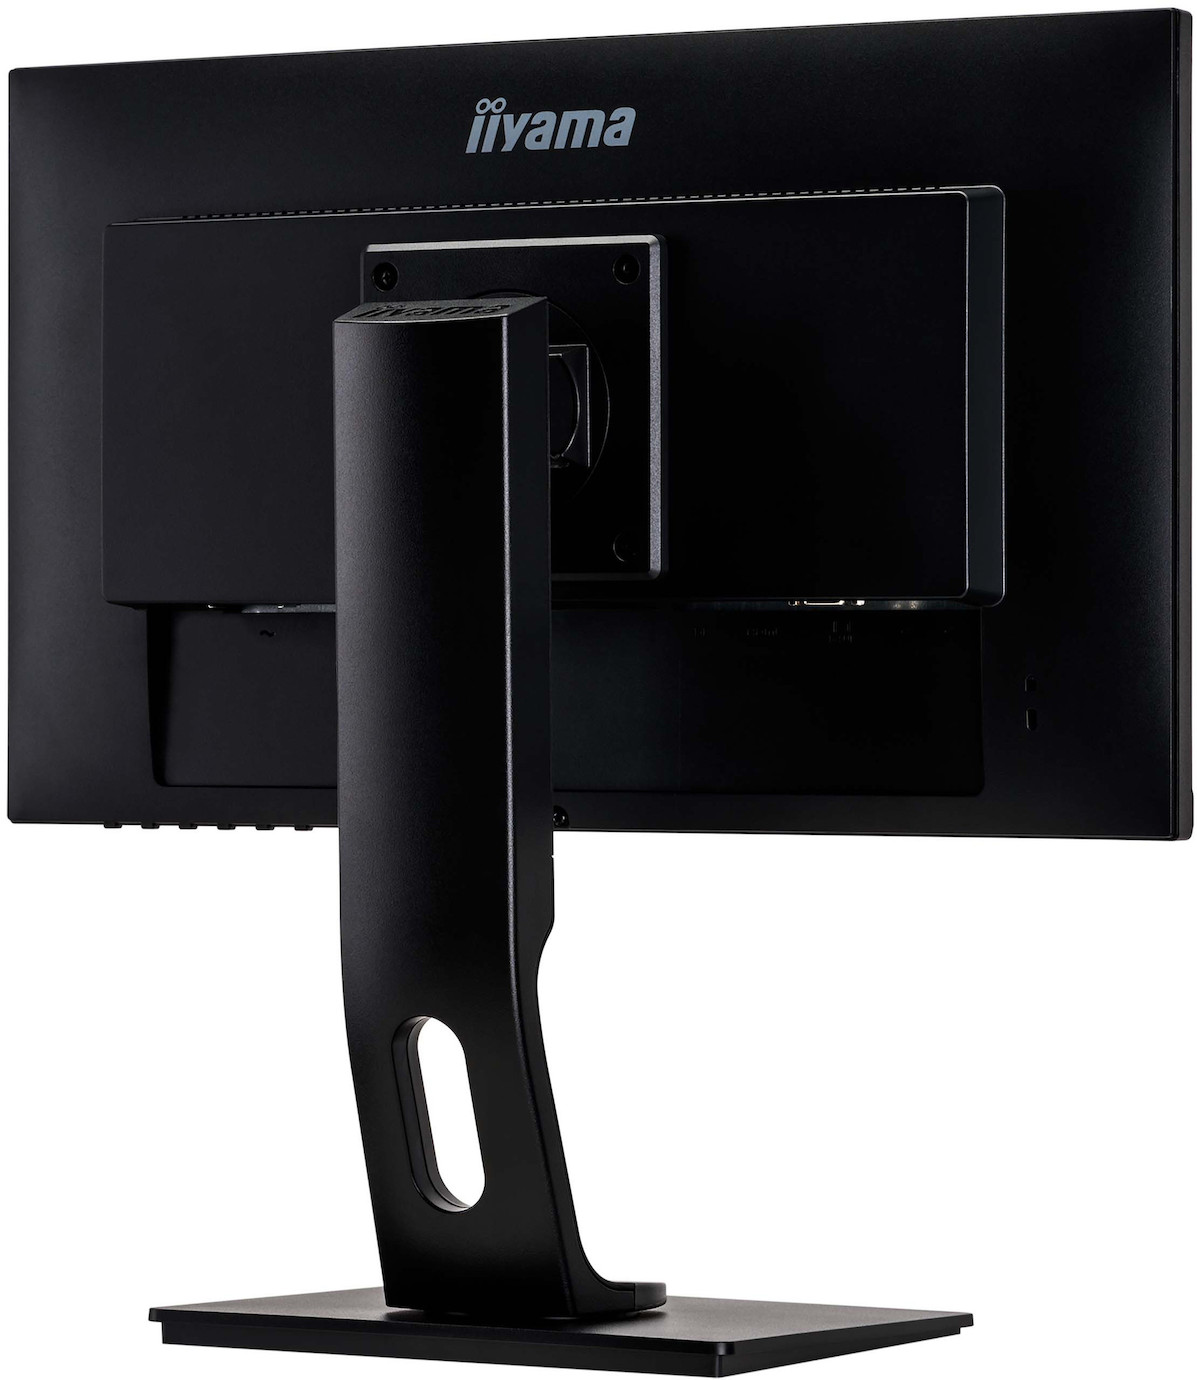 Vorschau: iiyama PROLITE XUB2294HSU-B1 22'' Businessmonitor mit 4ms und Full HD